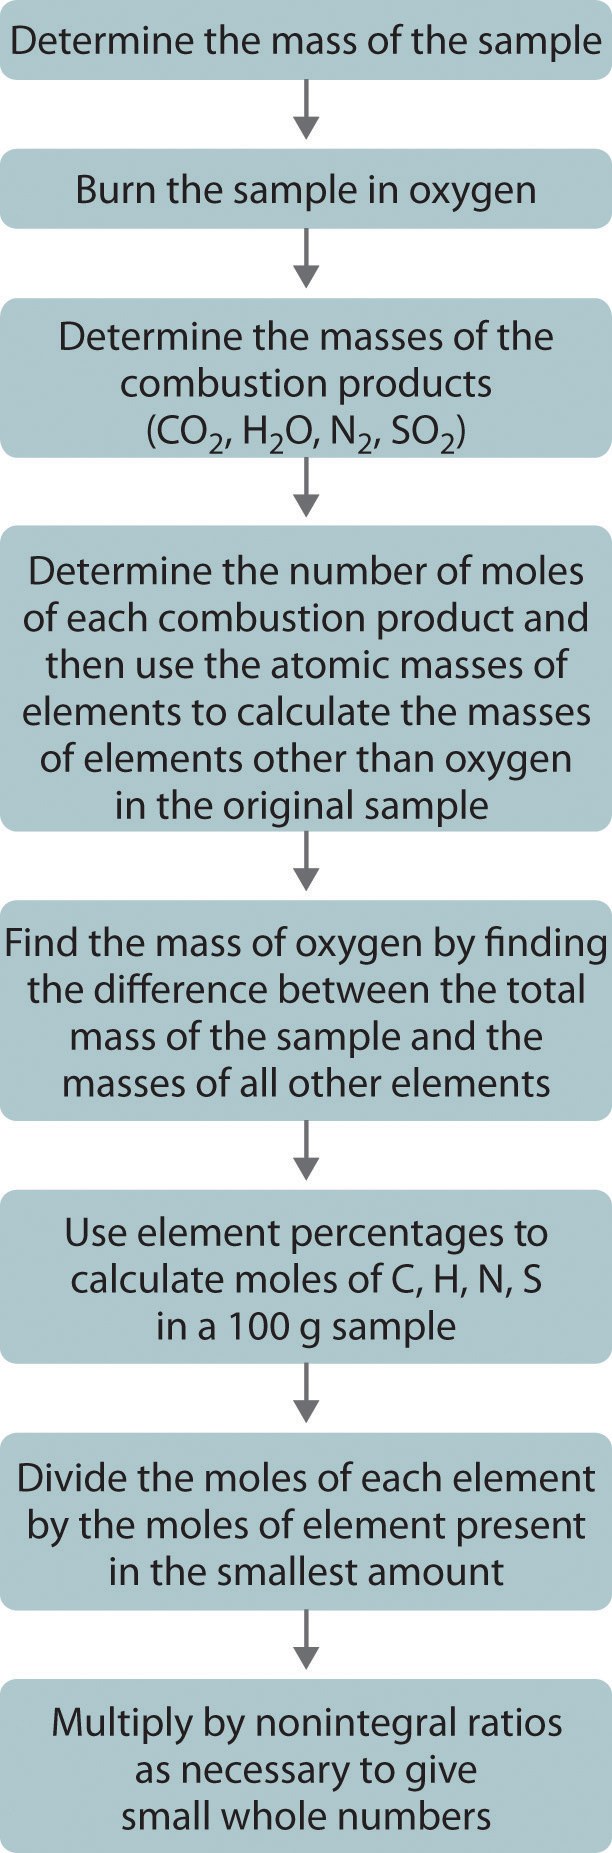 Diagrama de flujo que dice como: Determinar la masa de la muestra. Quema la muestra en oxígeno. Determinar las masas de los productos de combustión. Determinar el número de moles de cada producto de combustión y luego utilizar las masas atómicas de los elementos para calcular las masas de elementos distintos del oxígeno en la muestra original. Encuentra la masa de oxígeno encontrando la diferencia entre la masa total de la muestra y las masas de todos los demás elementos. Utilizar porcentajes de elementos para calcular moles de C, H, N, S en una muestra de 100 gramos. Divida los moles de cada elemento por los moles de elemento presentes en la menor cantidad. Multiplique por proporciones no integrales según sea necesario para dar números enteros pequeños.